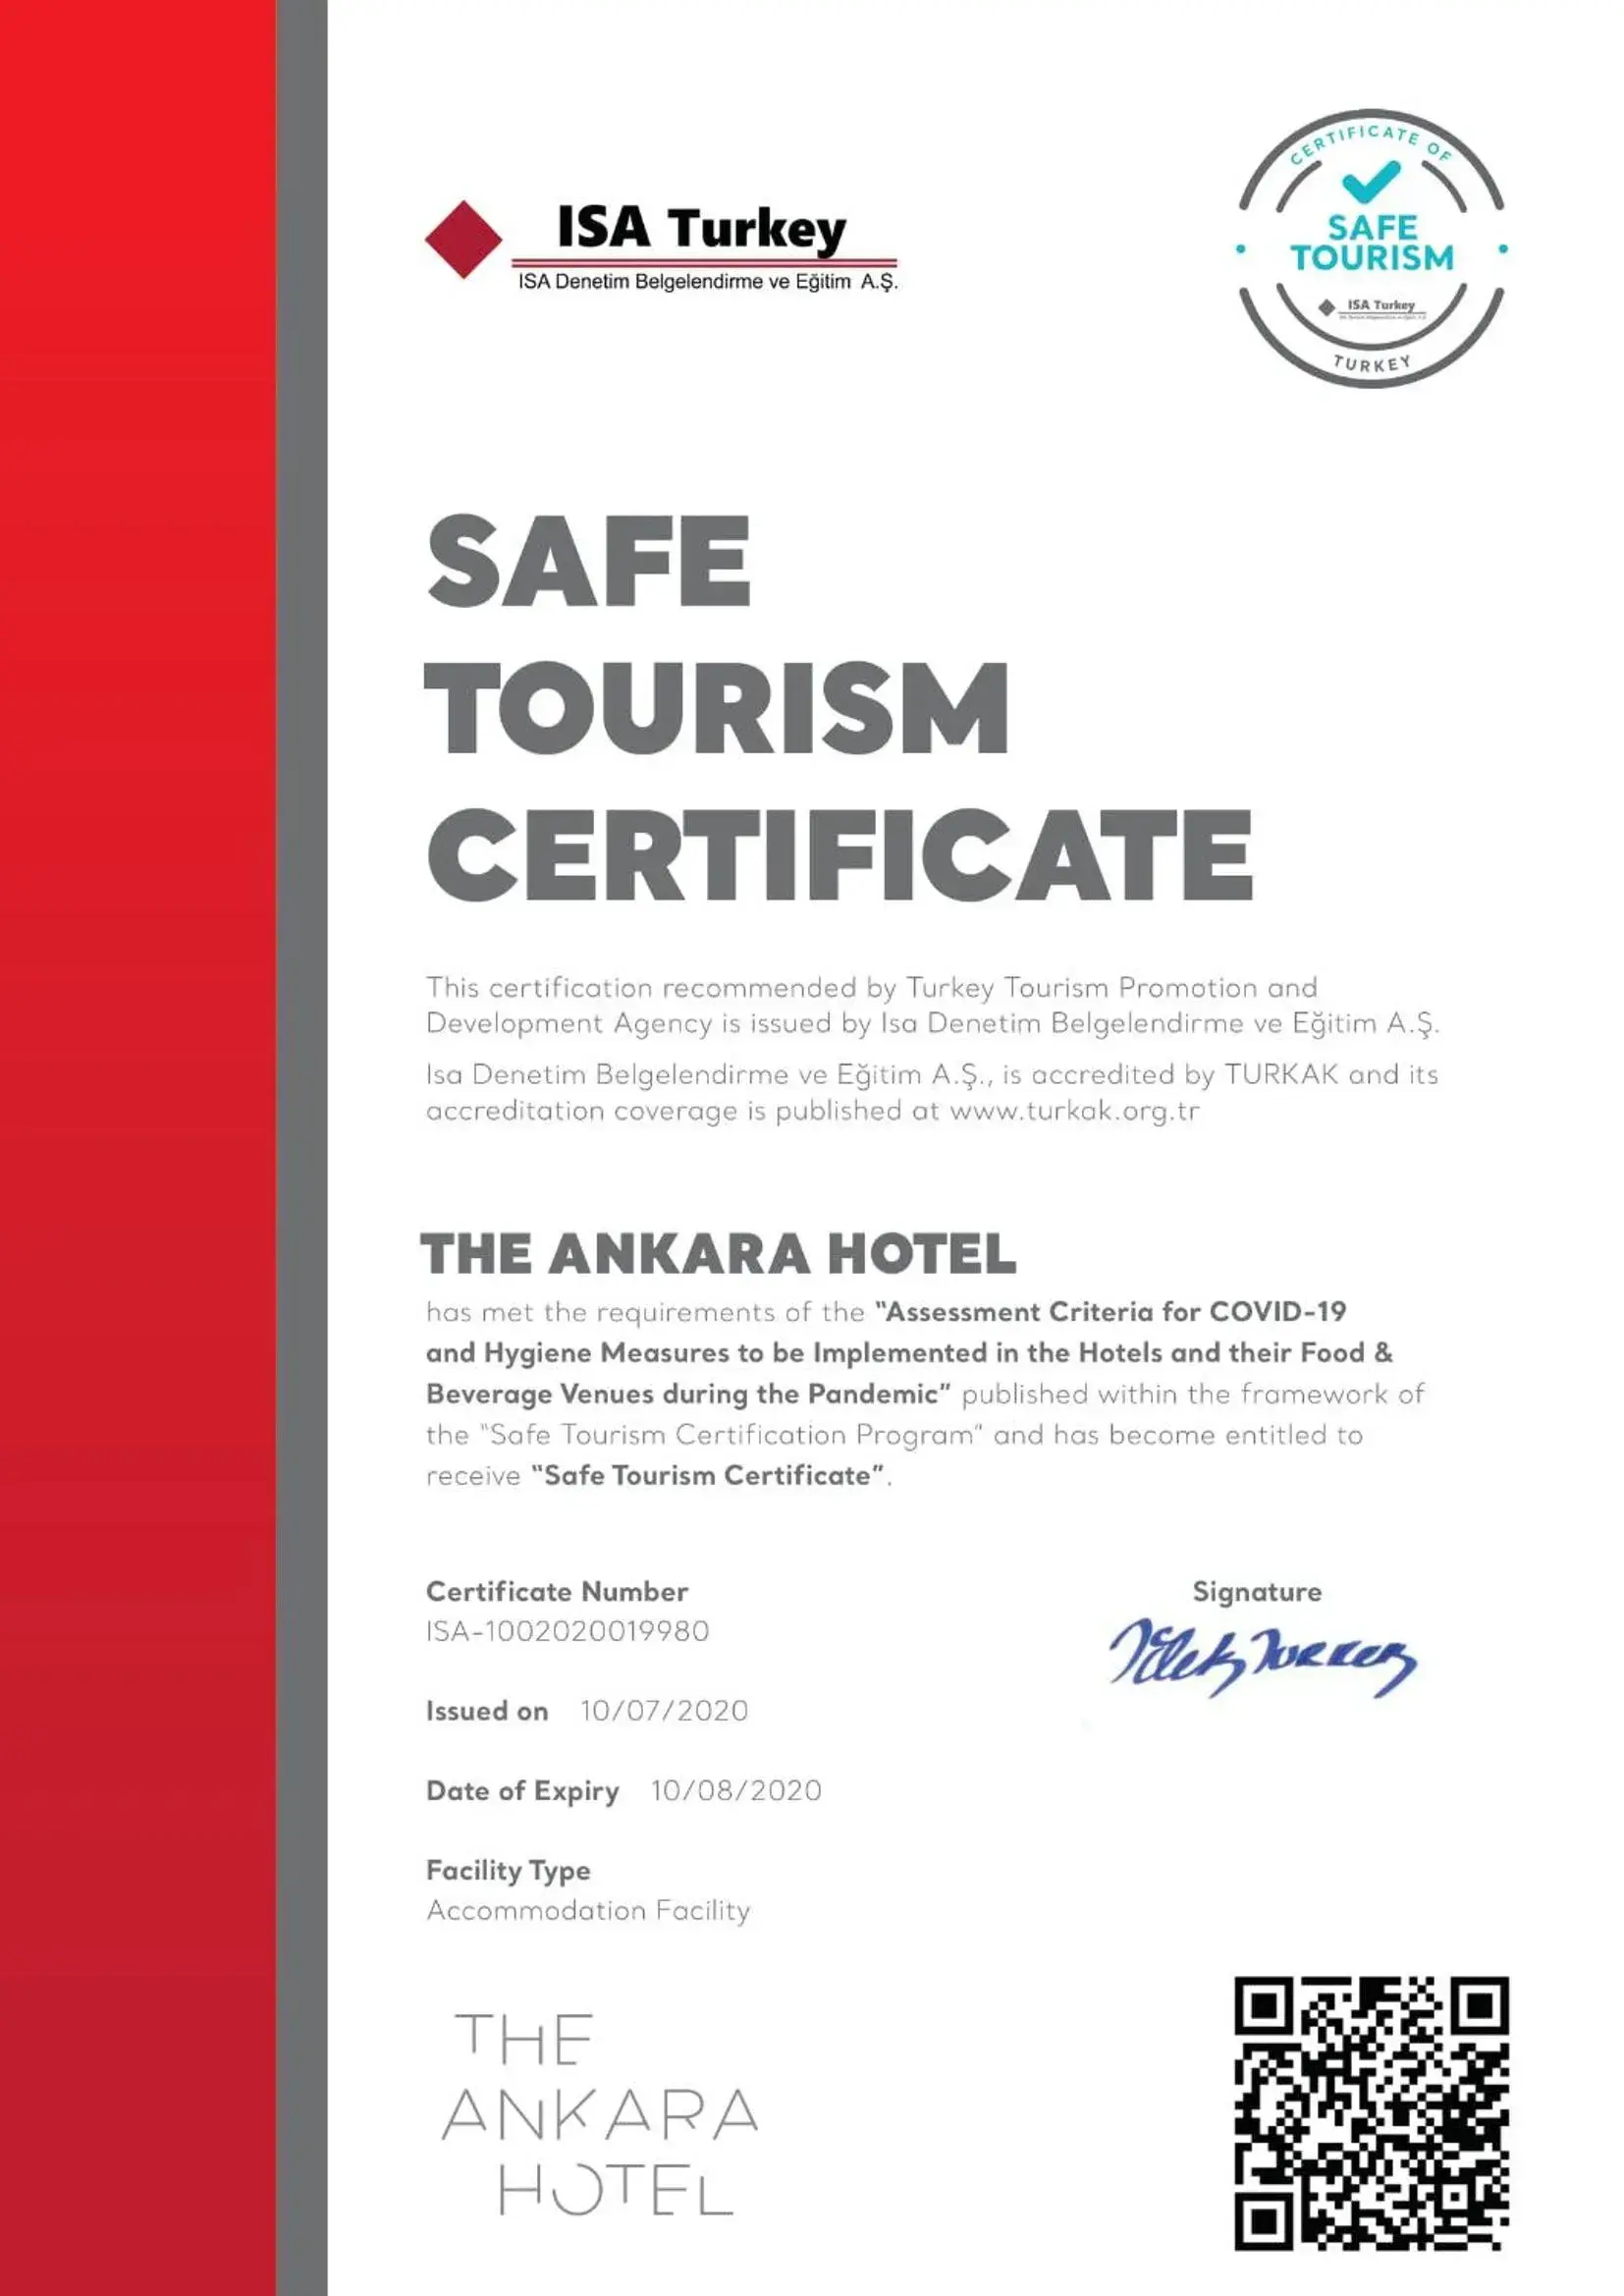 Logo/Certificate/Sign in The Ankara Hotel